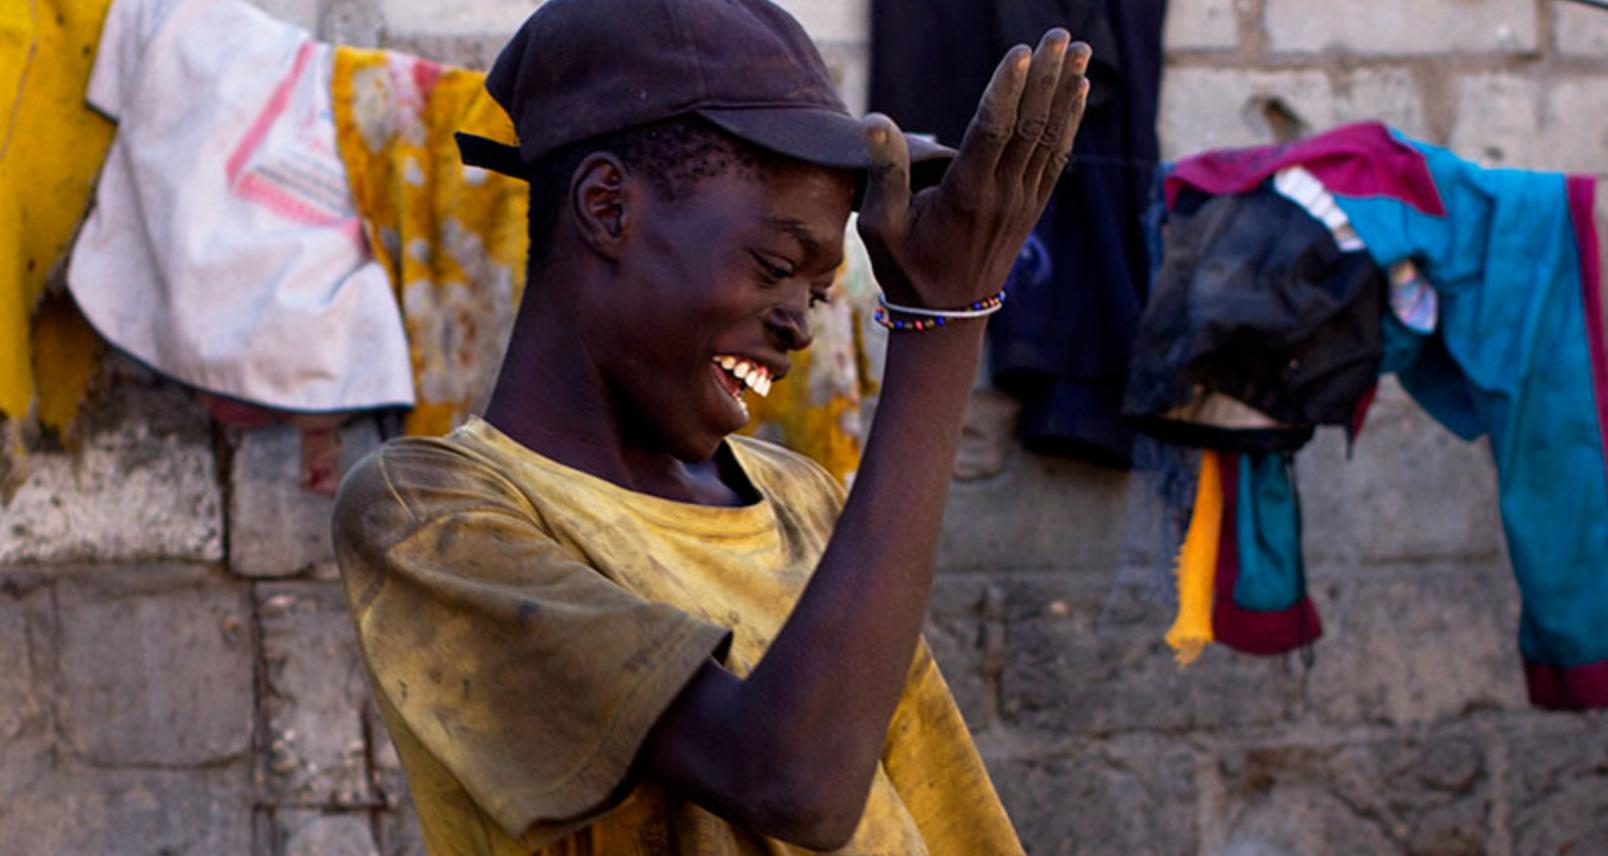 Τι ήταν η επιδημία γέλιου που συνέβη στη Τανζανία και κράτησε έναν ολόκληρο χρόνο; (βίντεο)